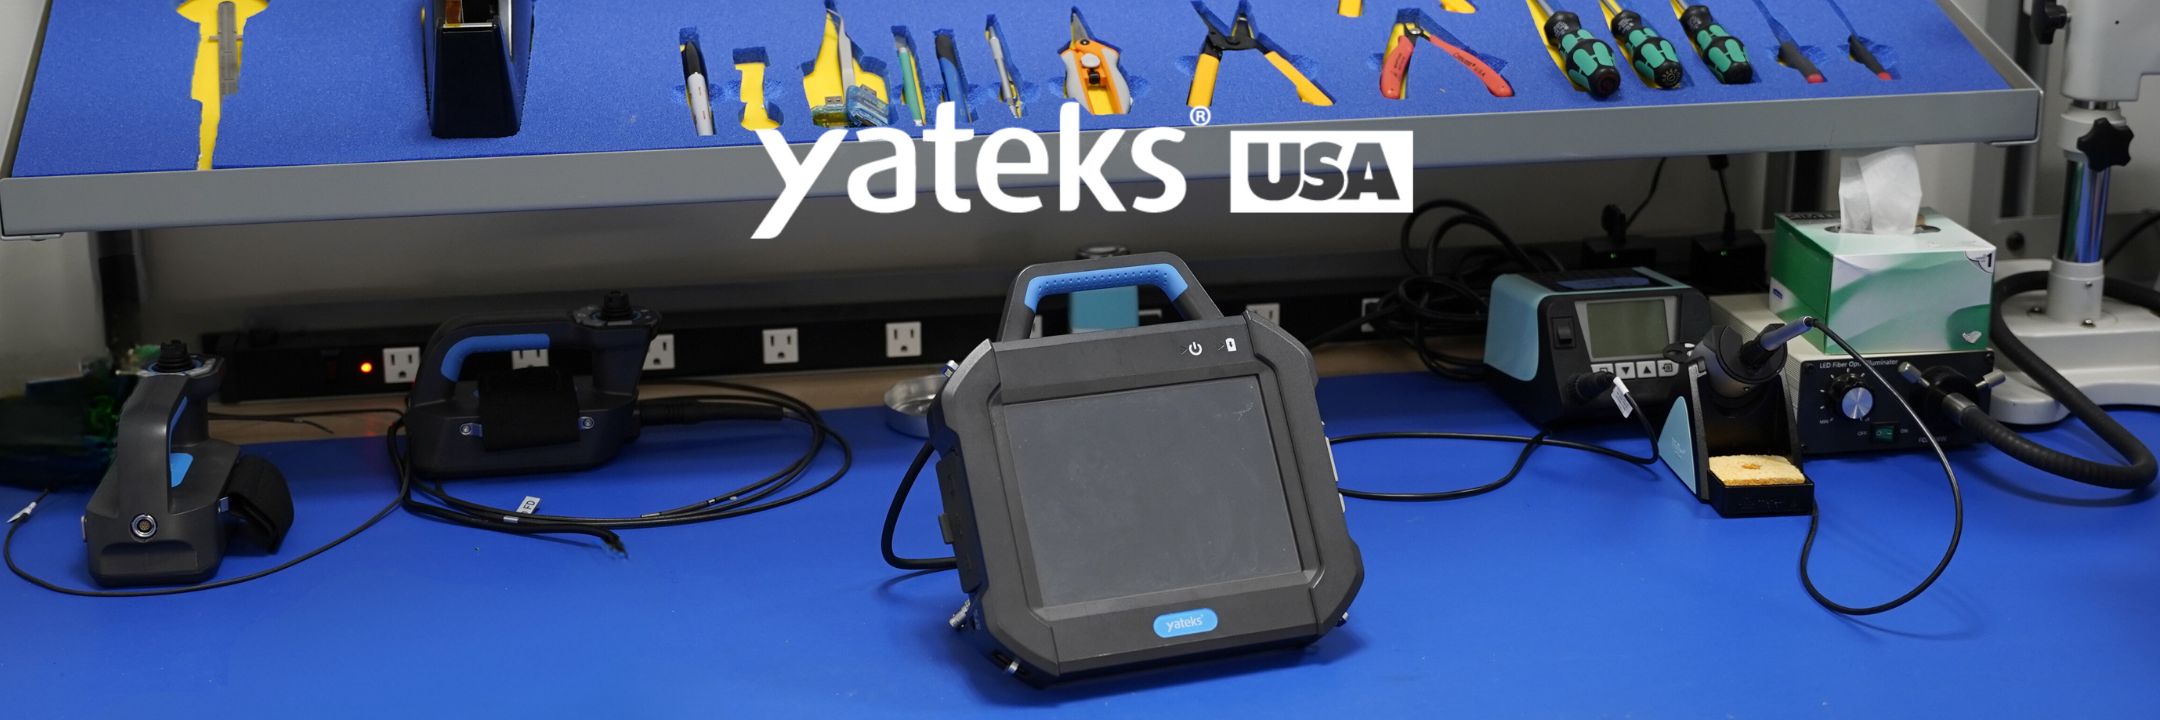 Yateks USA Repair Center Desktop Banner